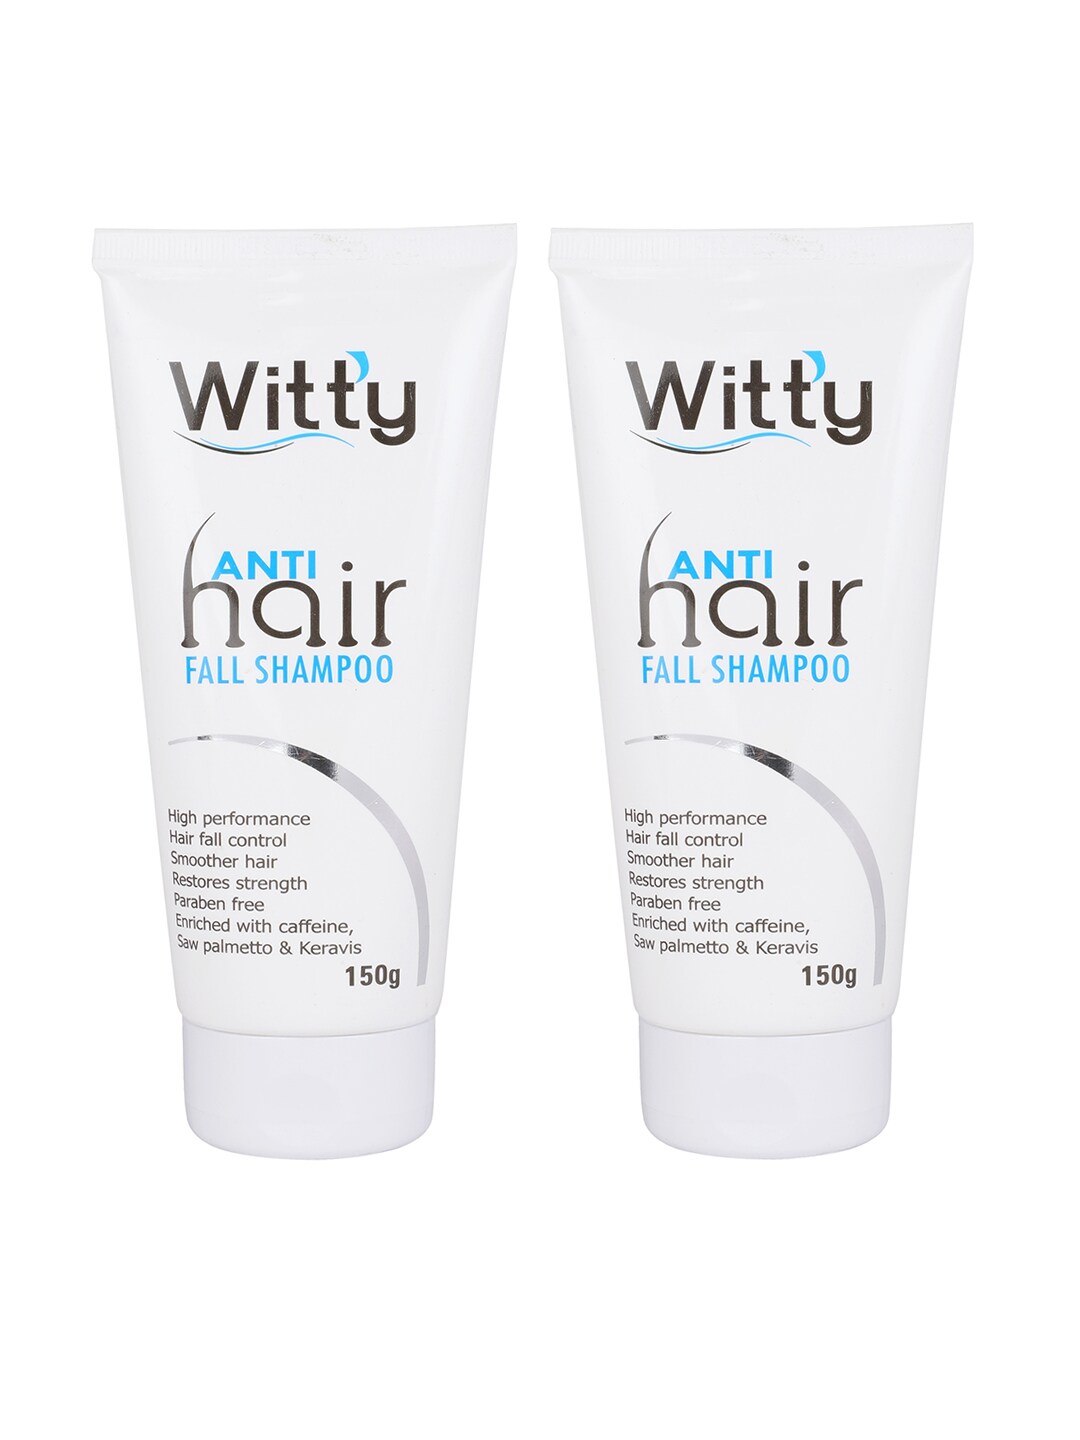 Navitus Set Of 2 Witty Anti Hairfall Shampoo - 300gm Price in India